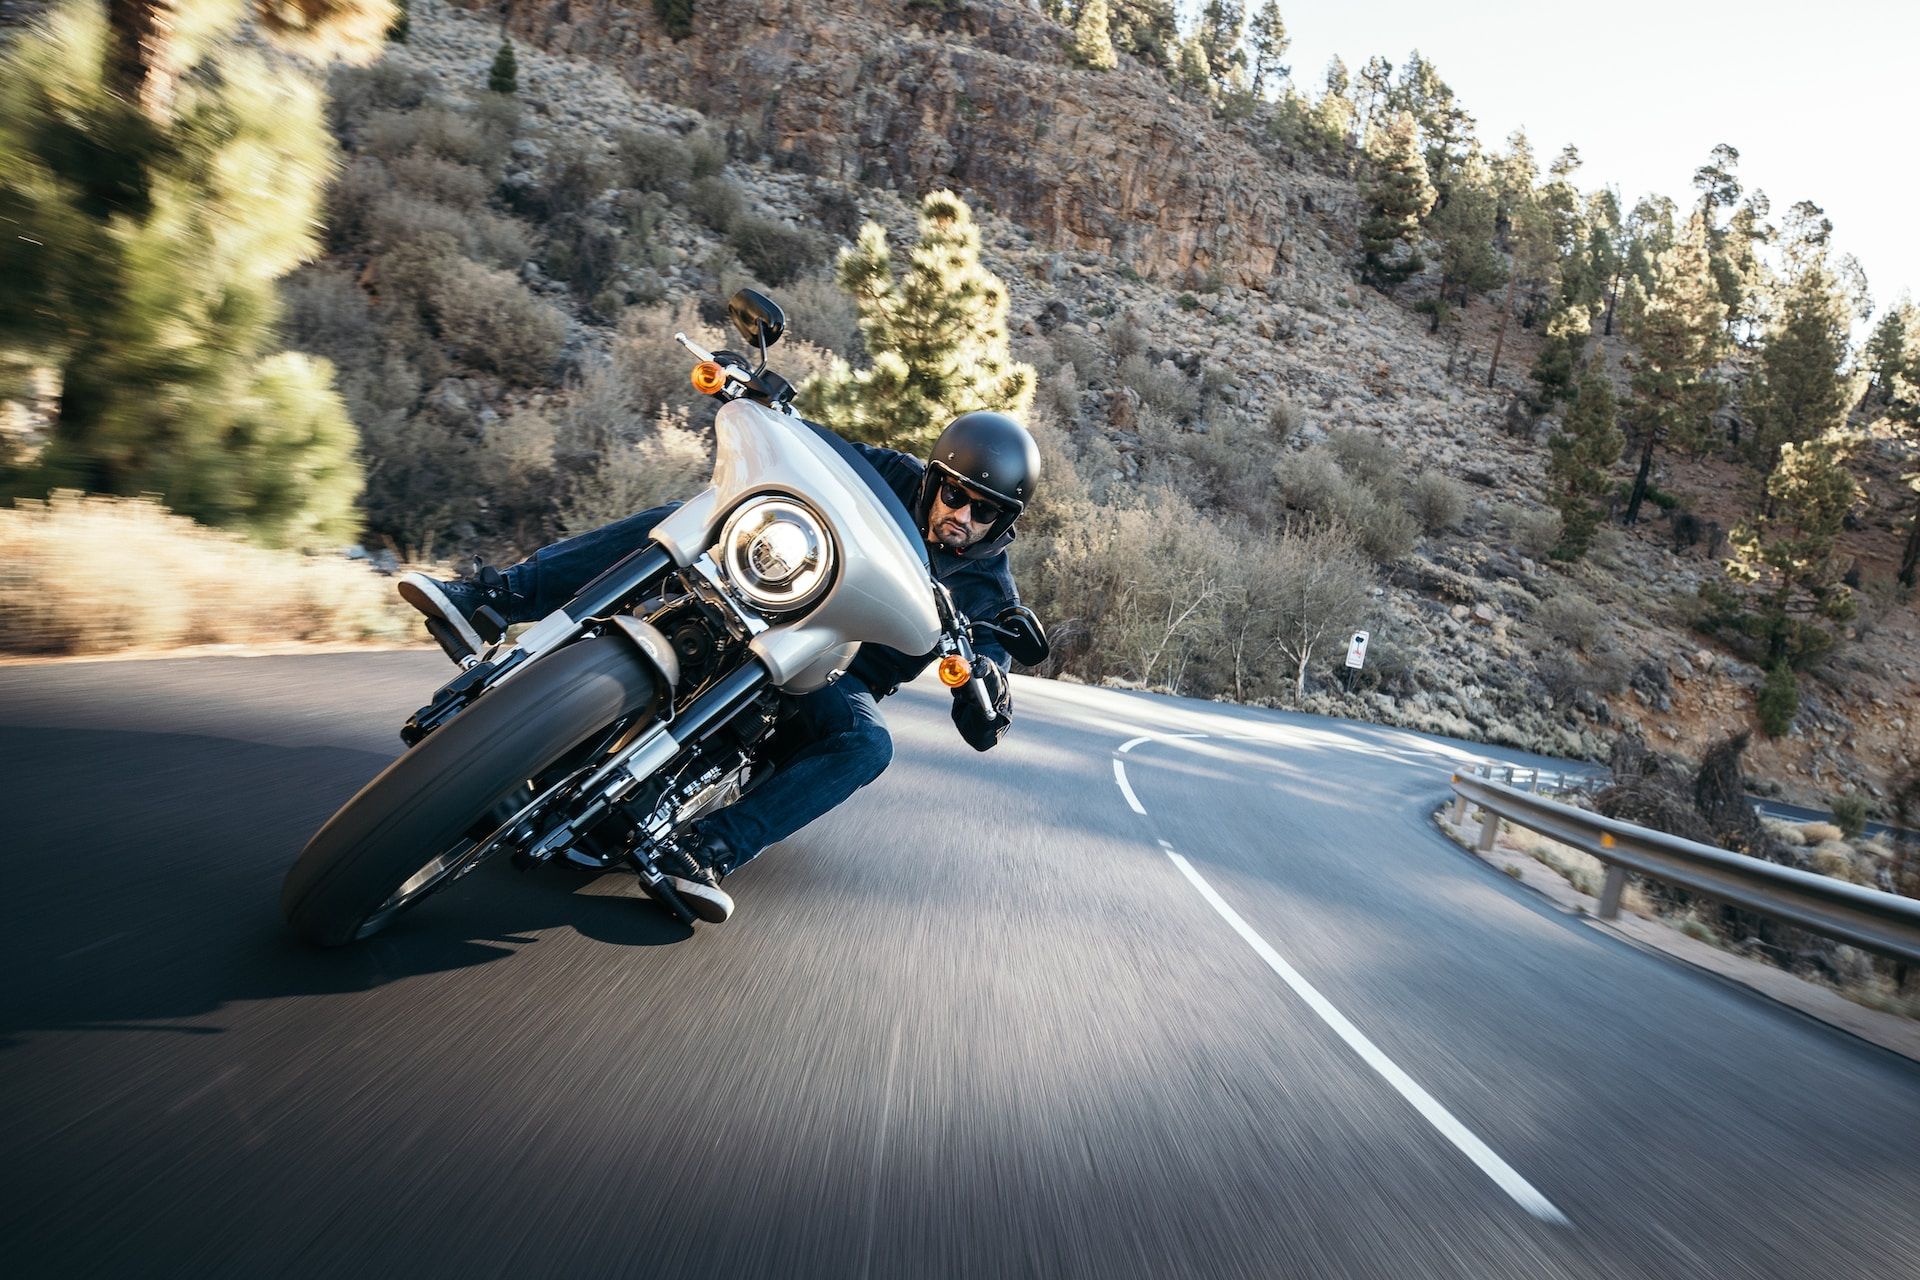 un homme en grosse moto roulant vite dans un virage, venent vers nous - Photo by Harley-Davidson on https://unsplash.com/fr/photos/wdc9ZAiwBB4